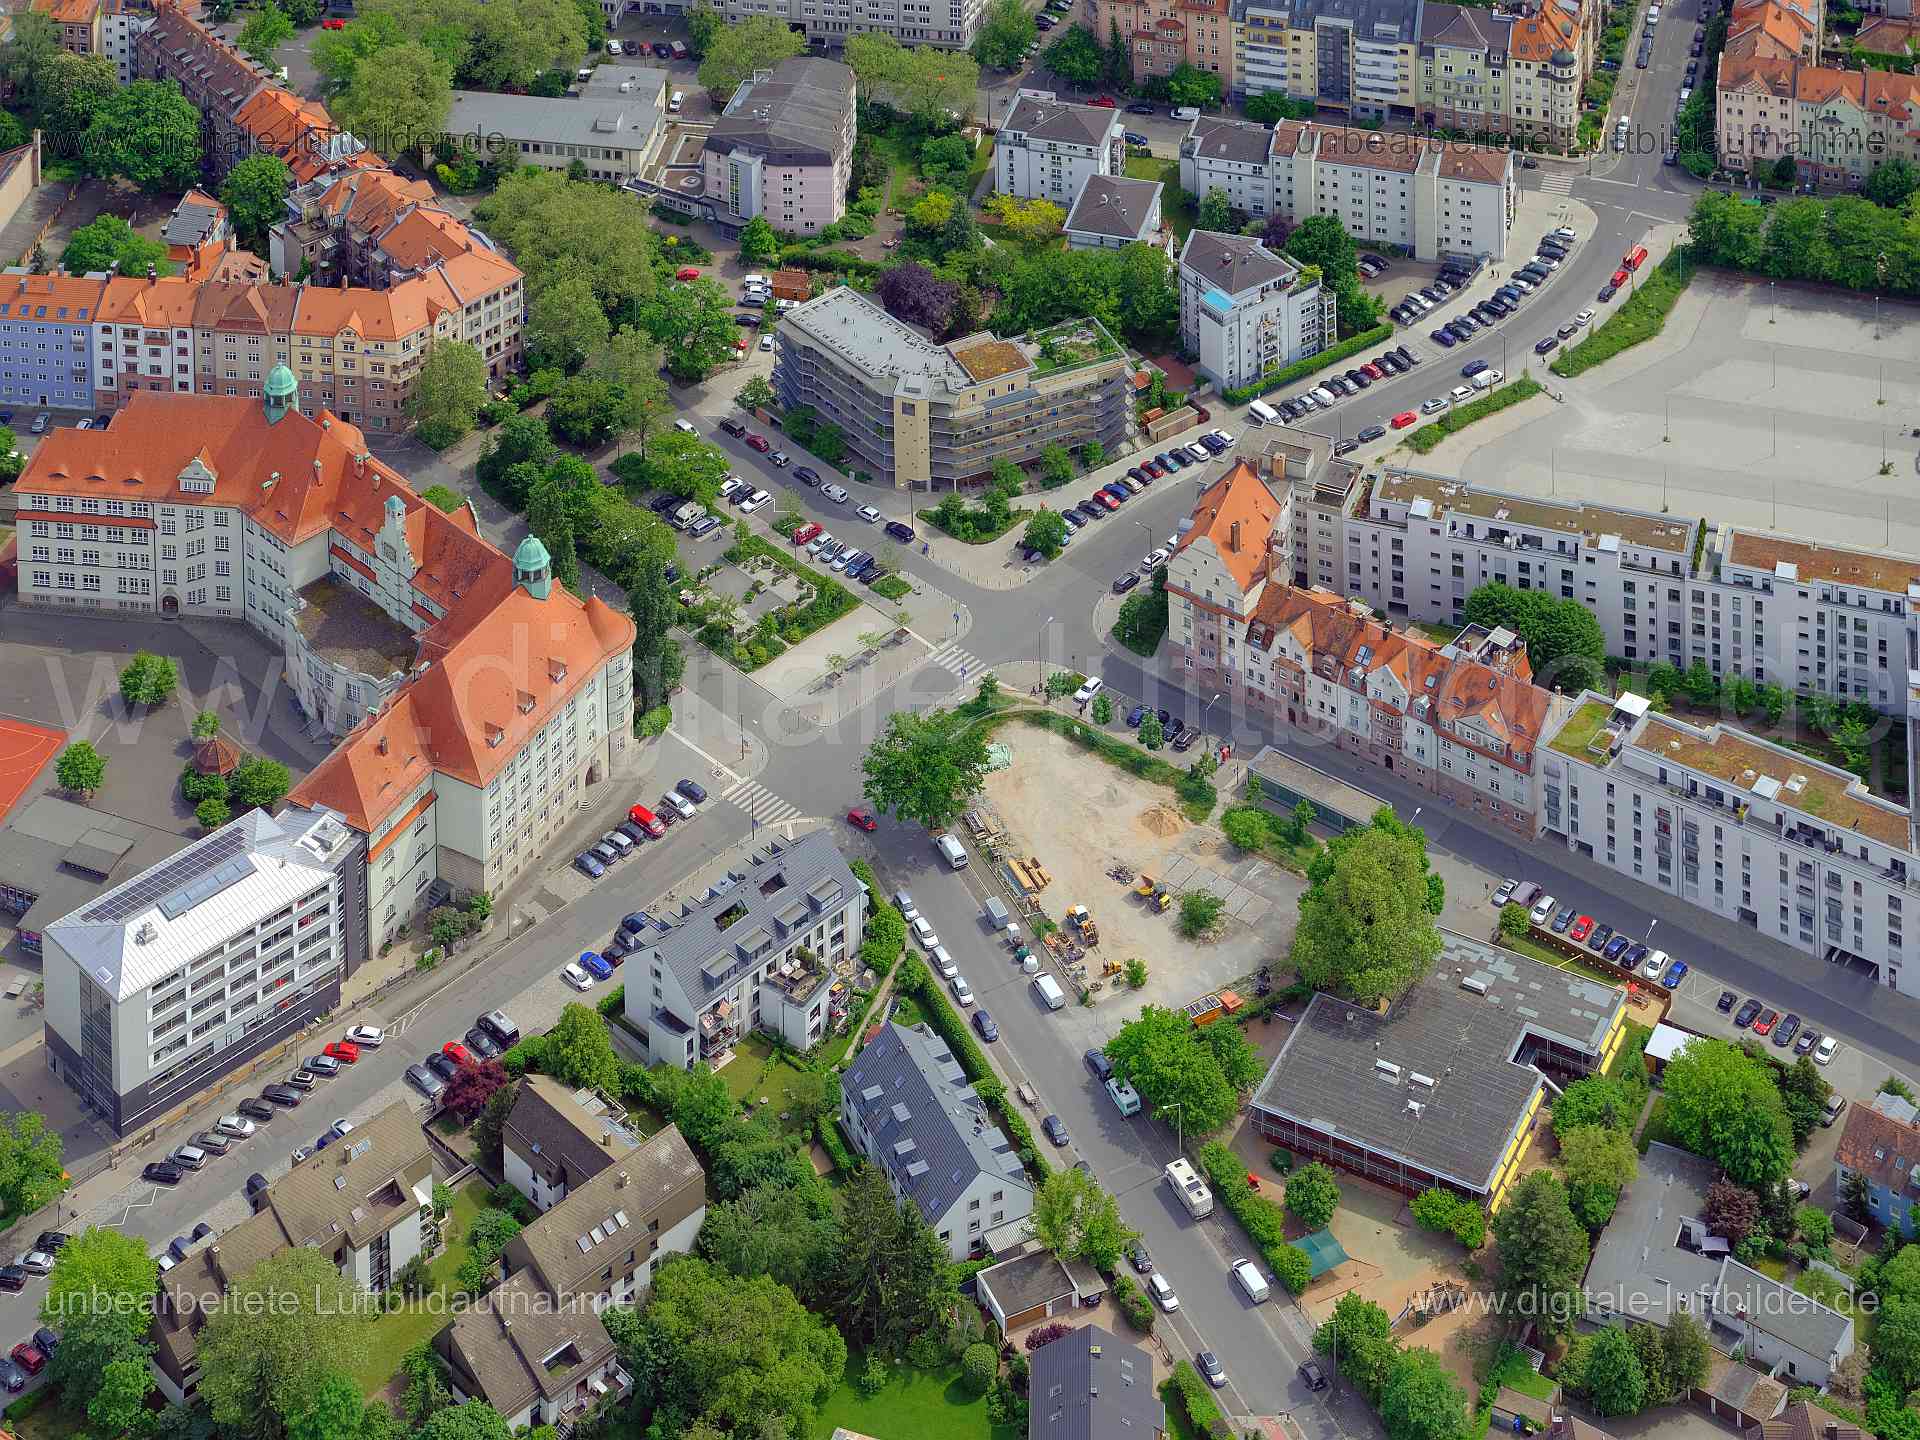 Luftbild - Bielingplatz, Ort: Nürnberg, Tags: Bielingplatz, , Bielingplatz, Bielingstraße, Flurstraße, Hallerstraße, Heime...